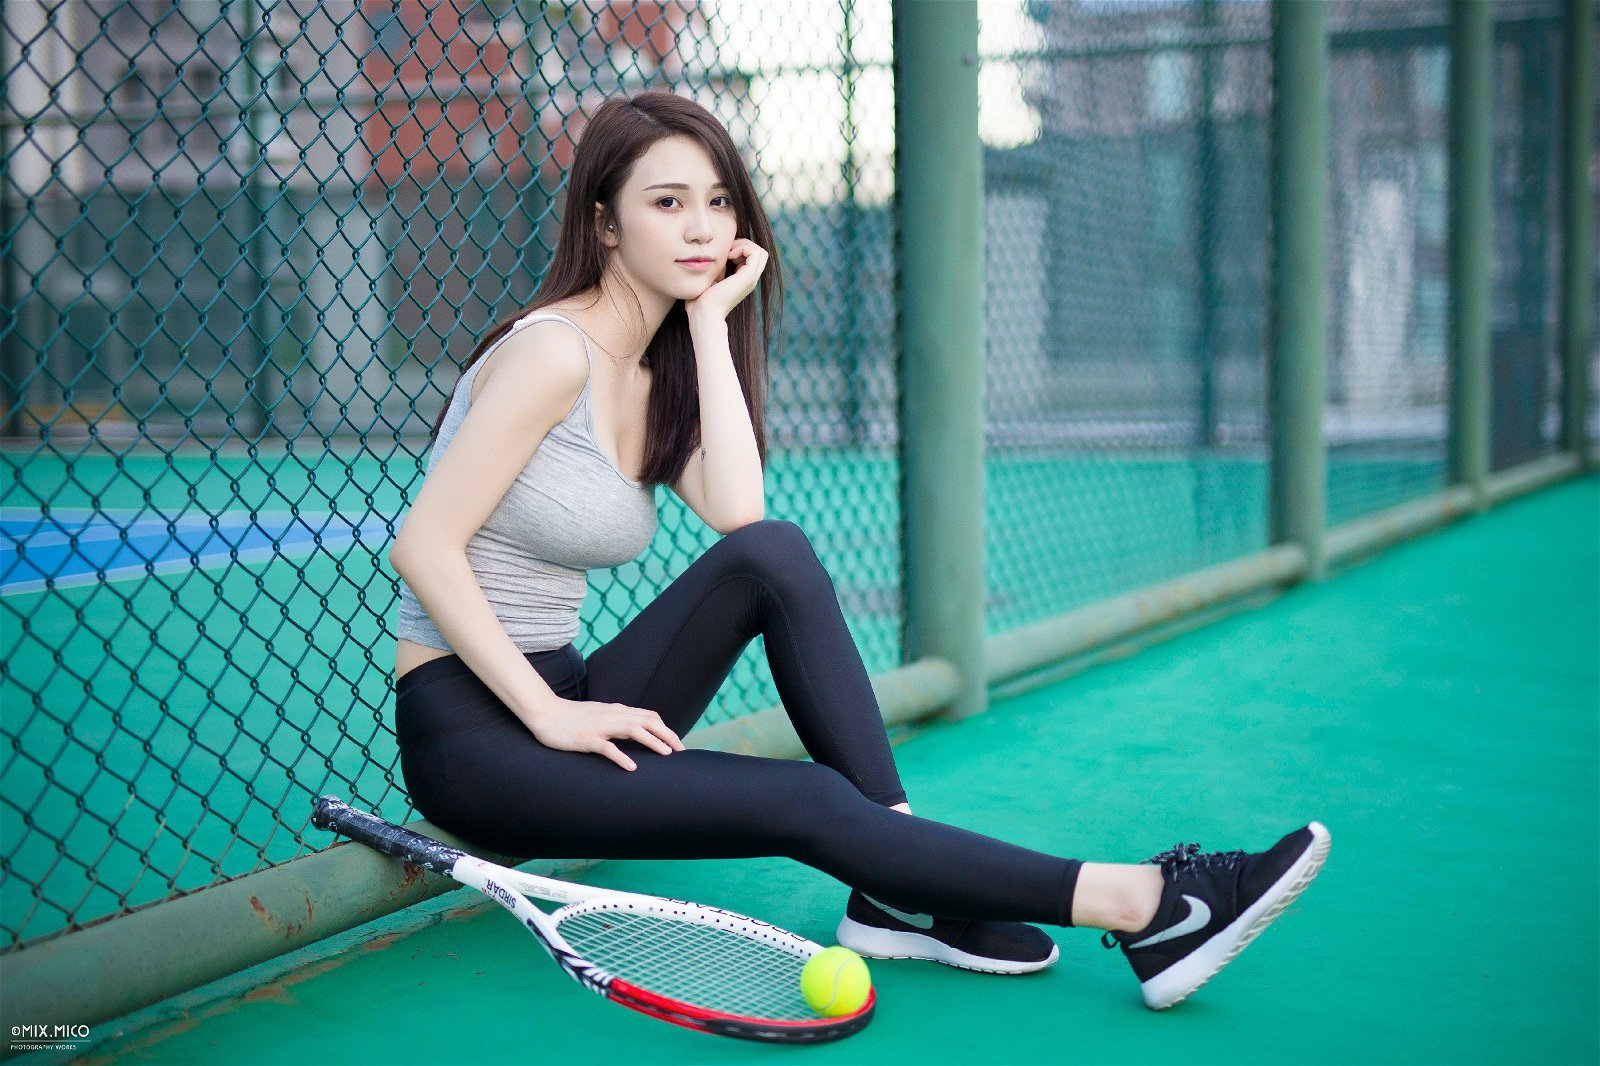 004-tennis-girl (10).jpg